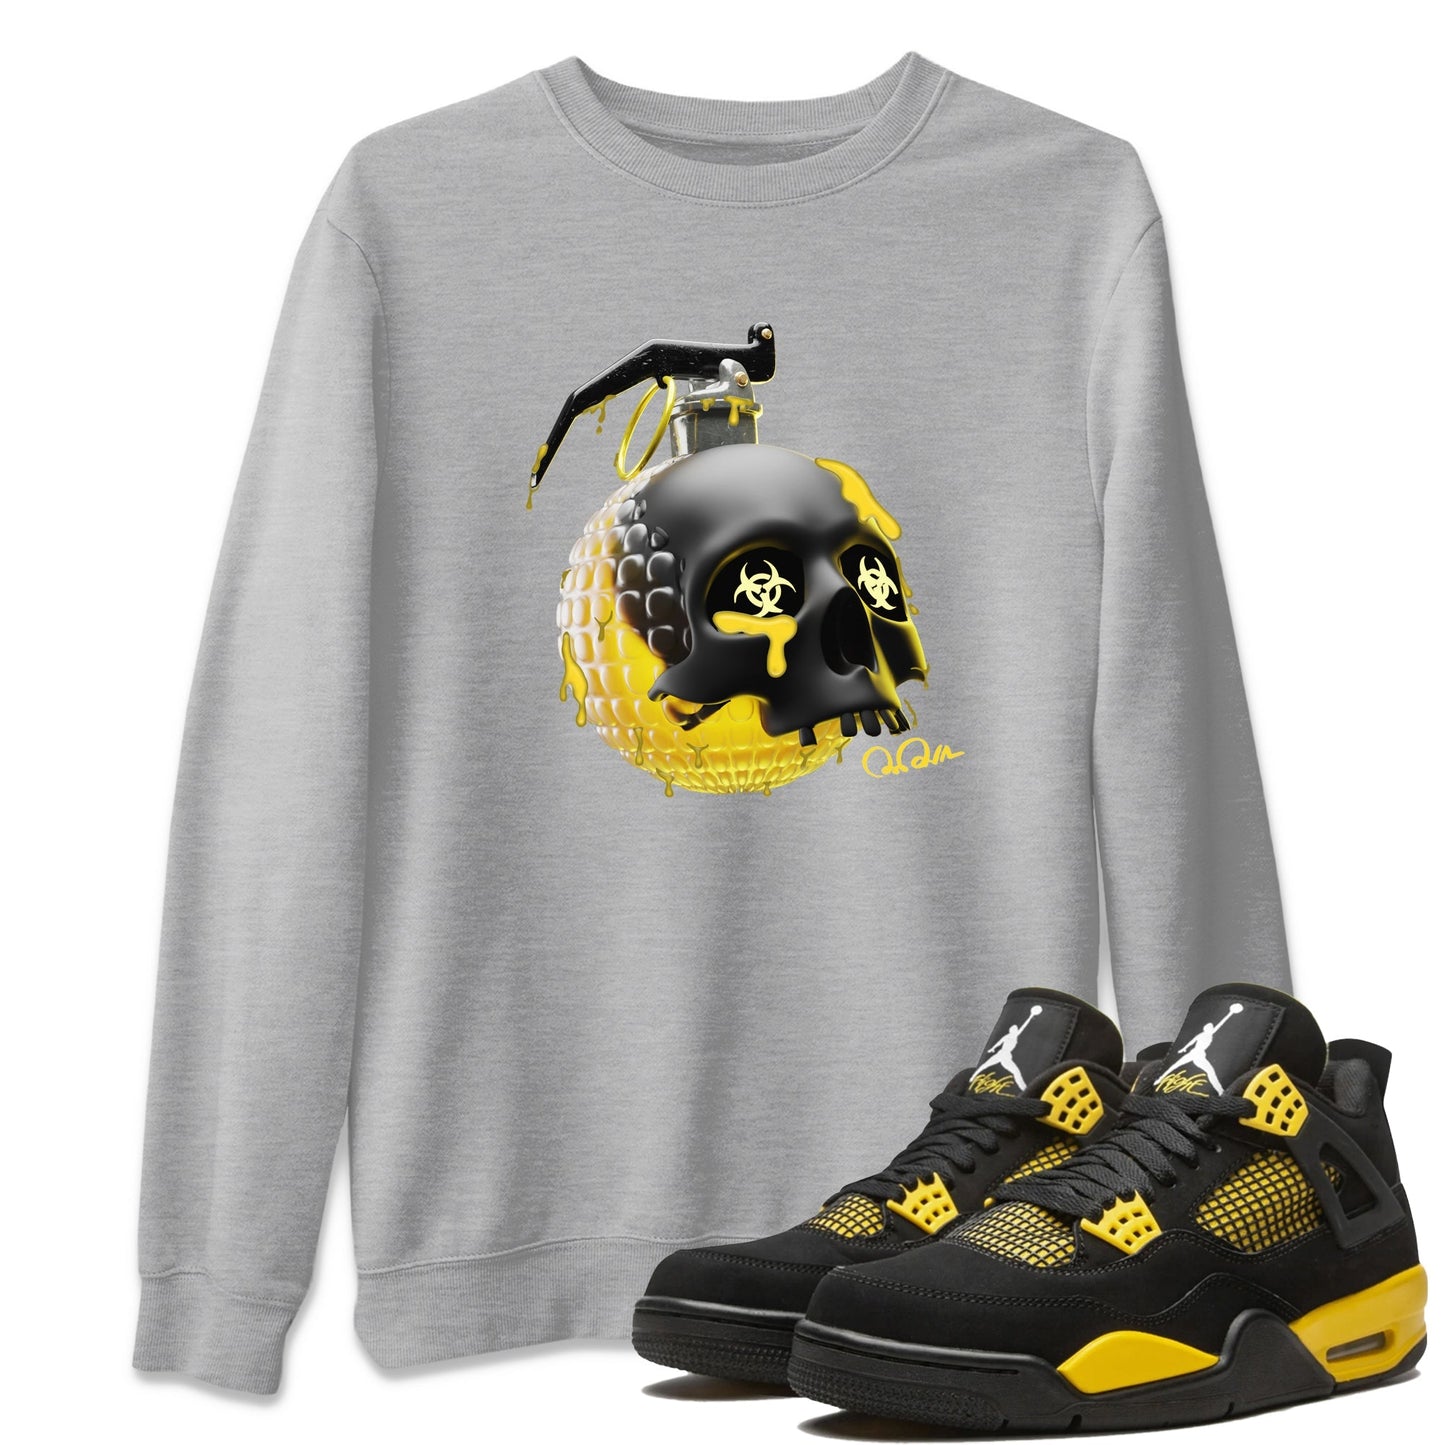 Air Jordan 4 Thunder Sneaker Tees Drip Gear Zone Skull Bomb Sneaker Tees AJ4 Thunder Jumpman Shirt Unisex Shirts Heather Grey 1